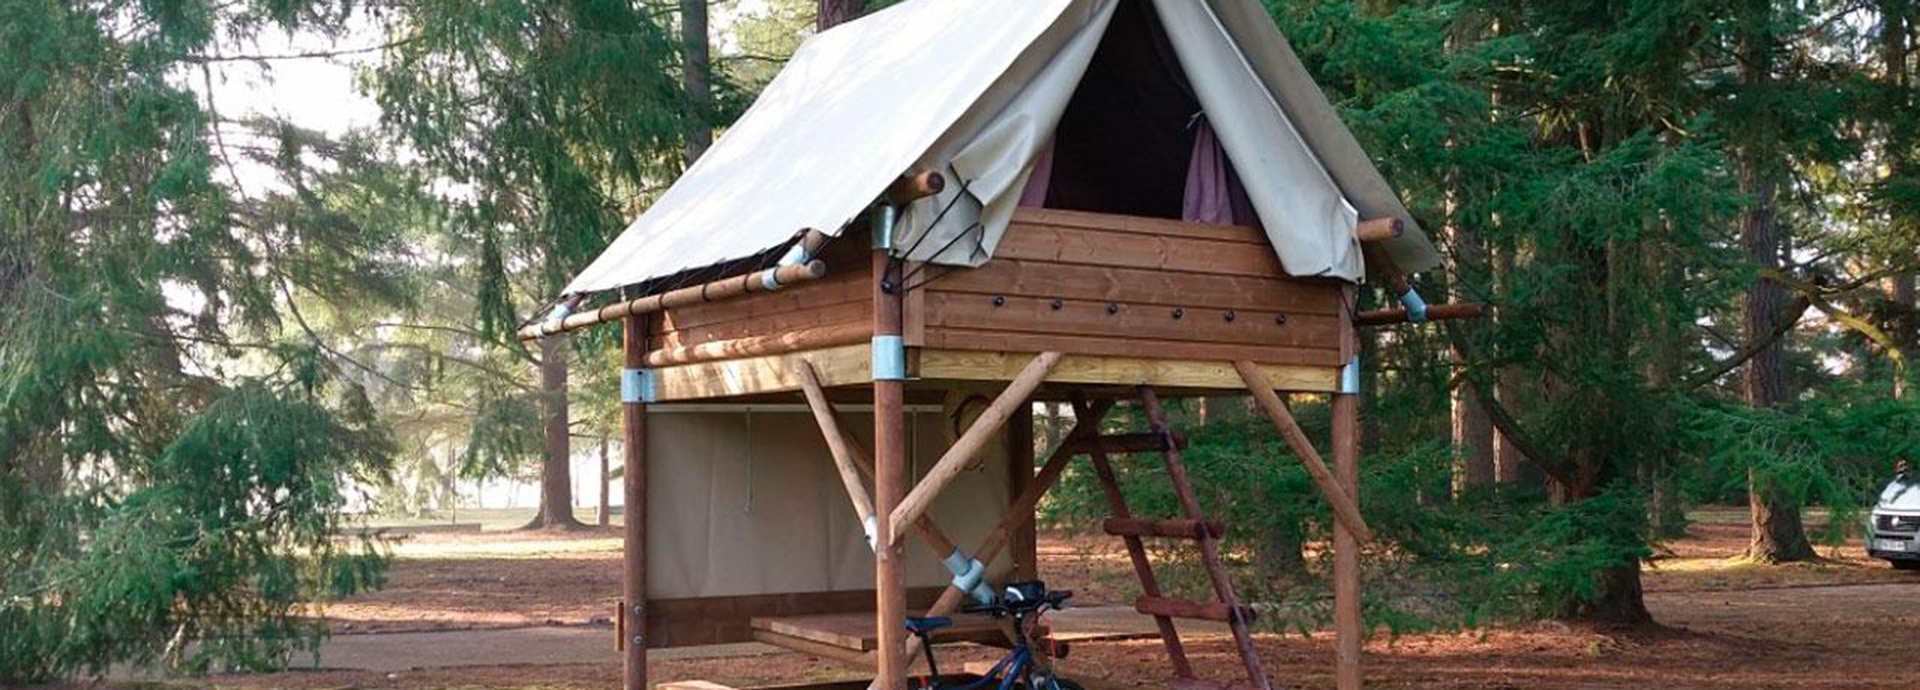 Vermietung eines Pfahlbiwaks des 3-Sterne-Campingplatzes Les Acacias in Altkirch im Elsass